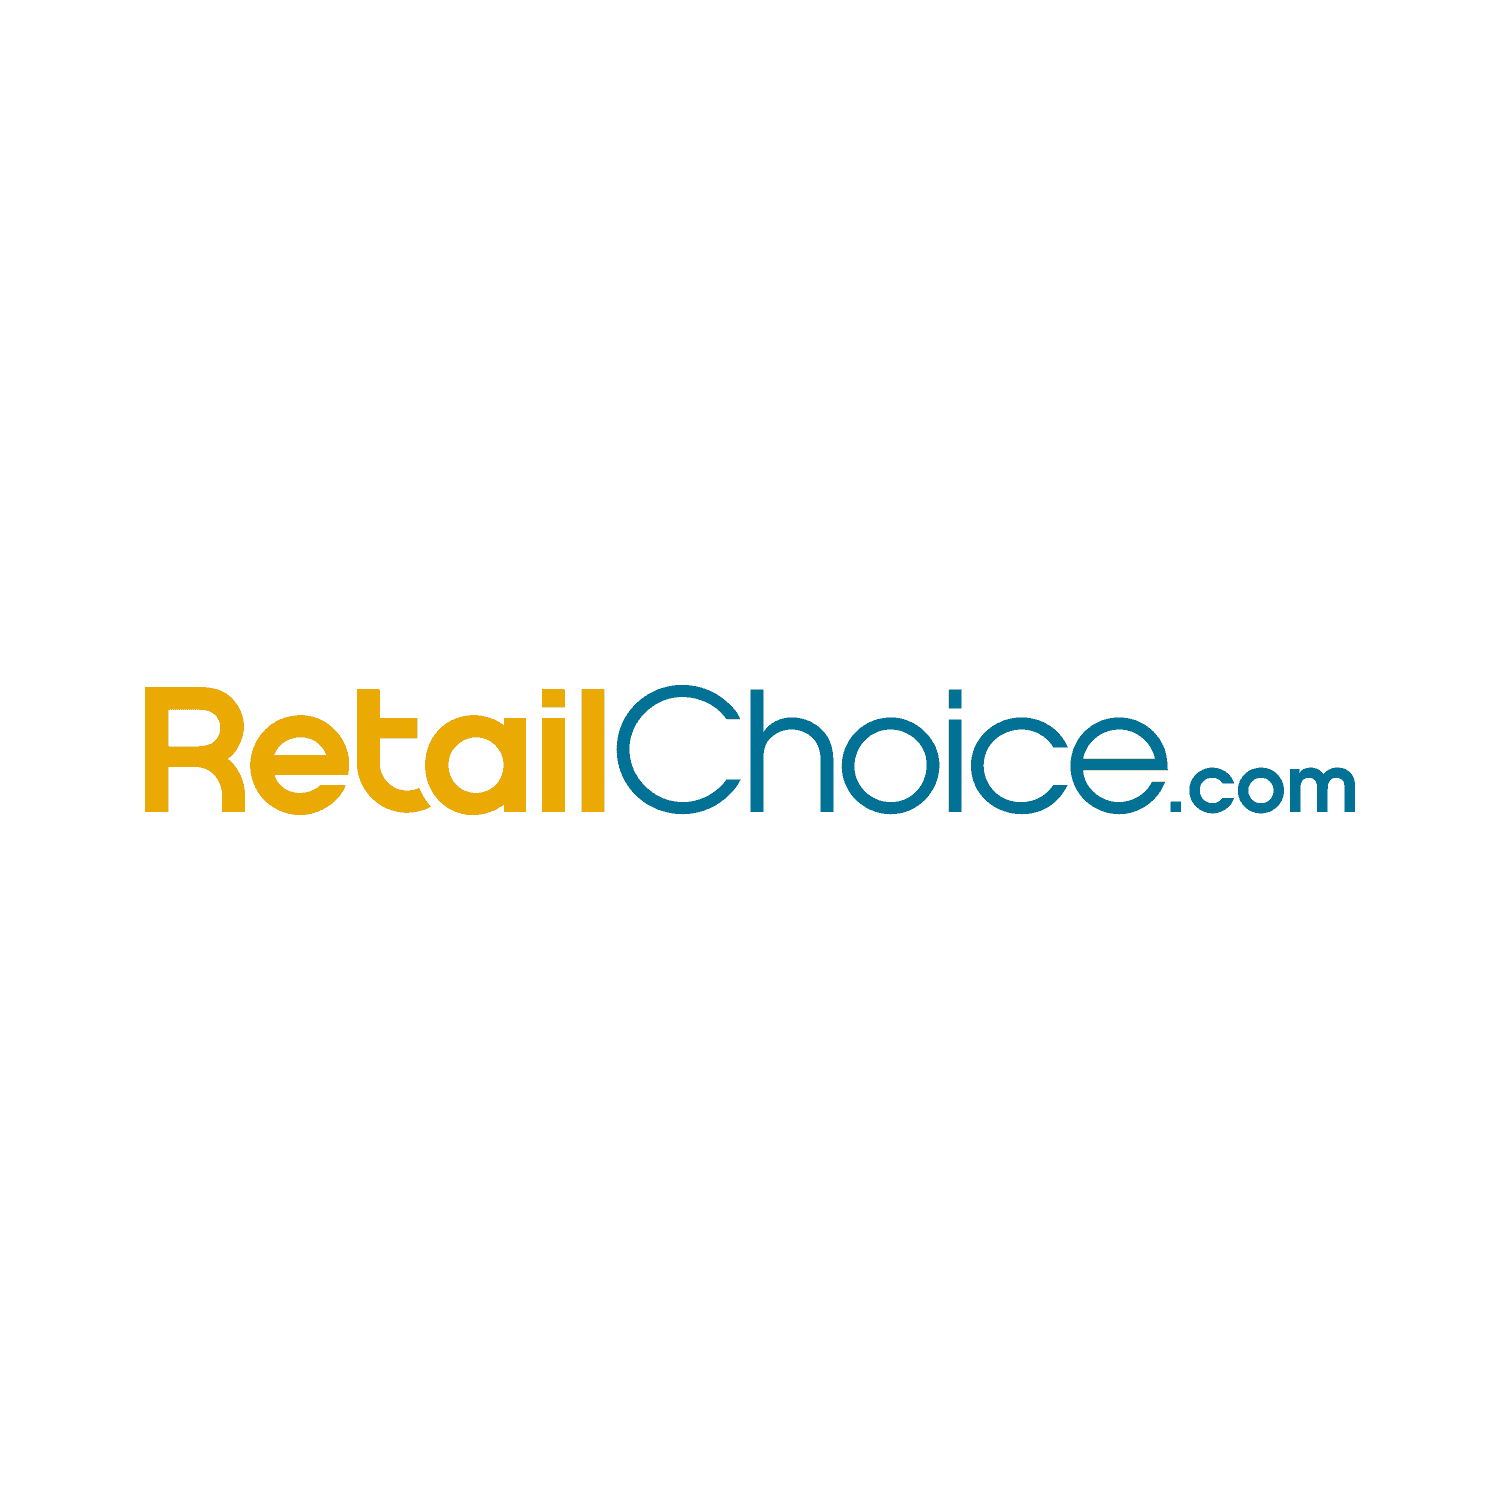 British Retailer Logo - Retail jobs: UK retail careers, retail vacancies, jobs in retail ...